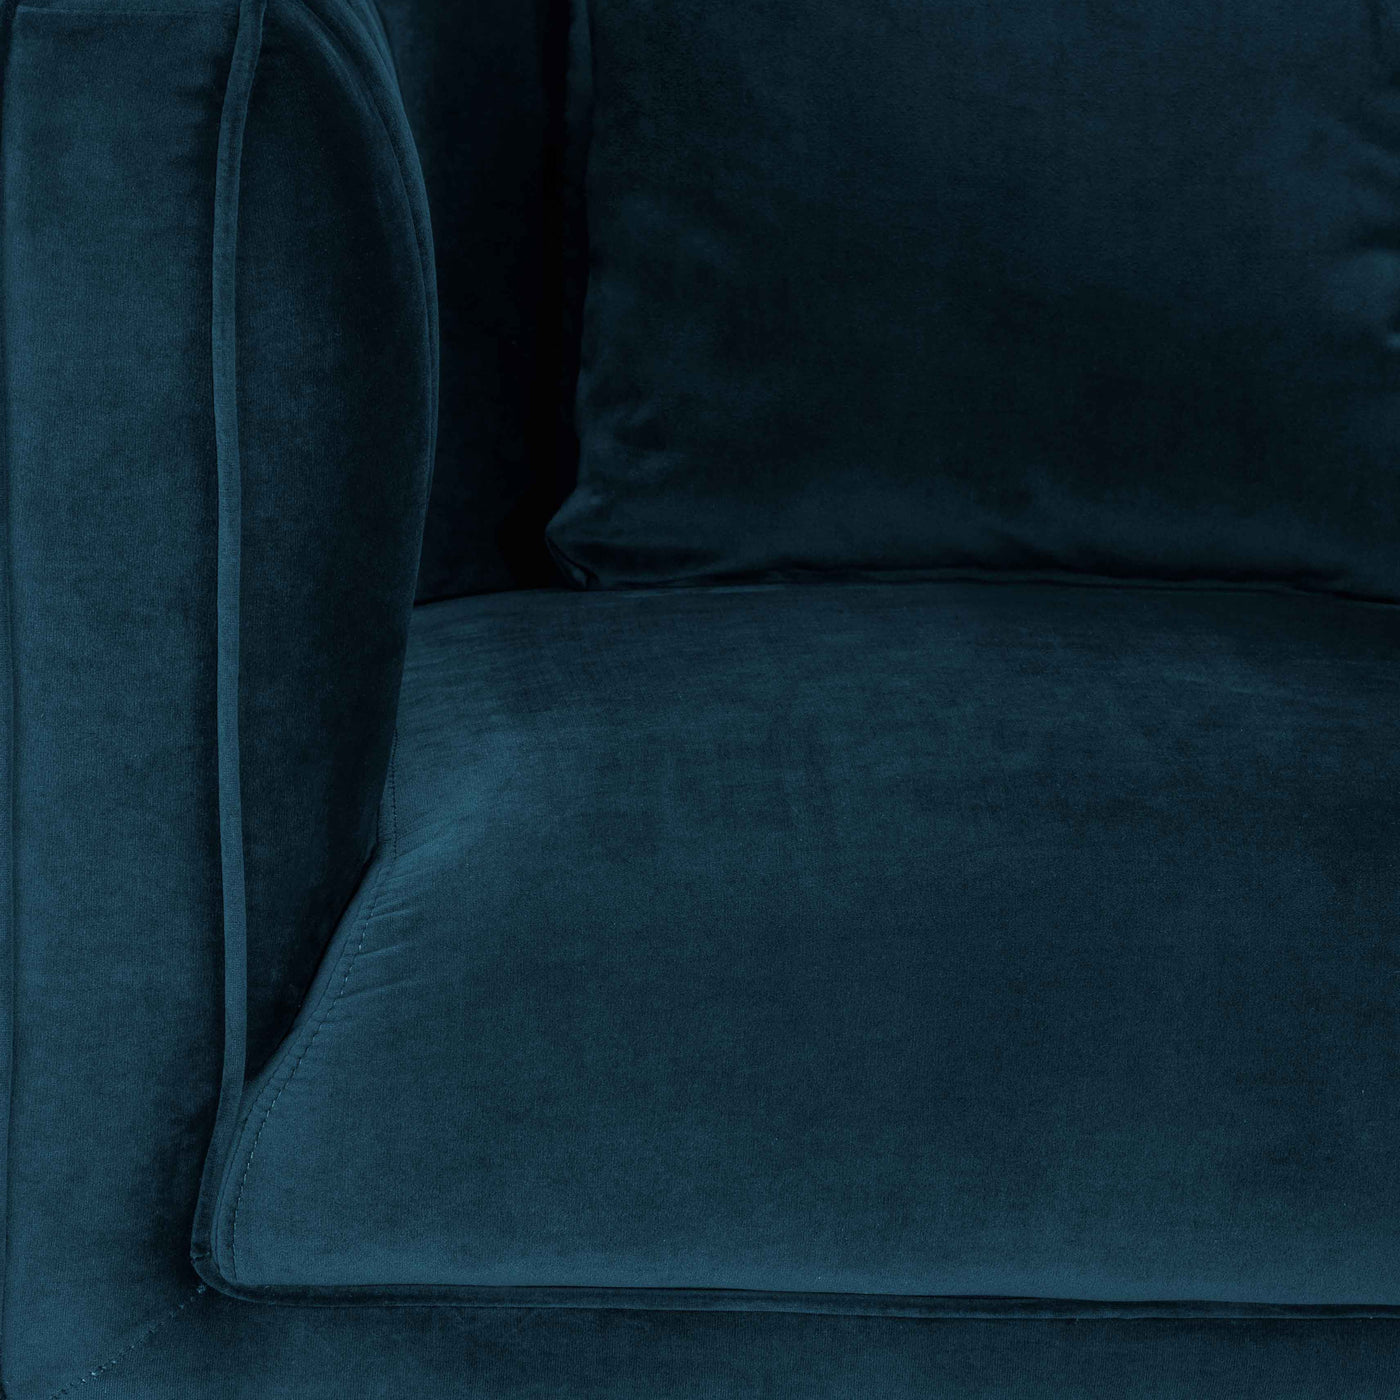 Celina Chair - Blue